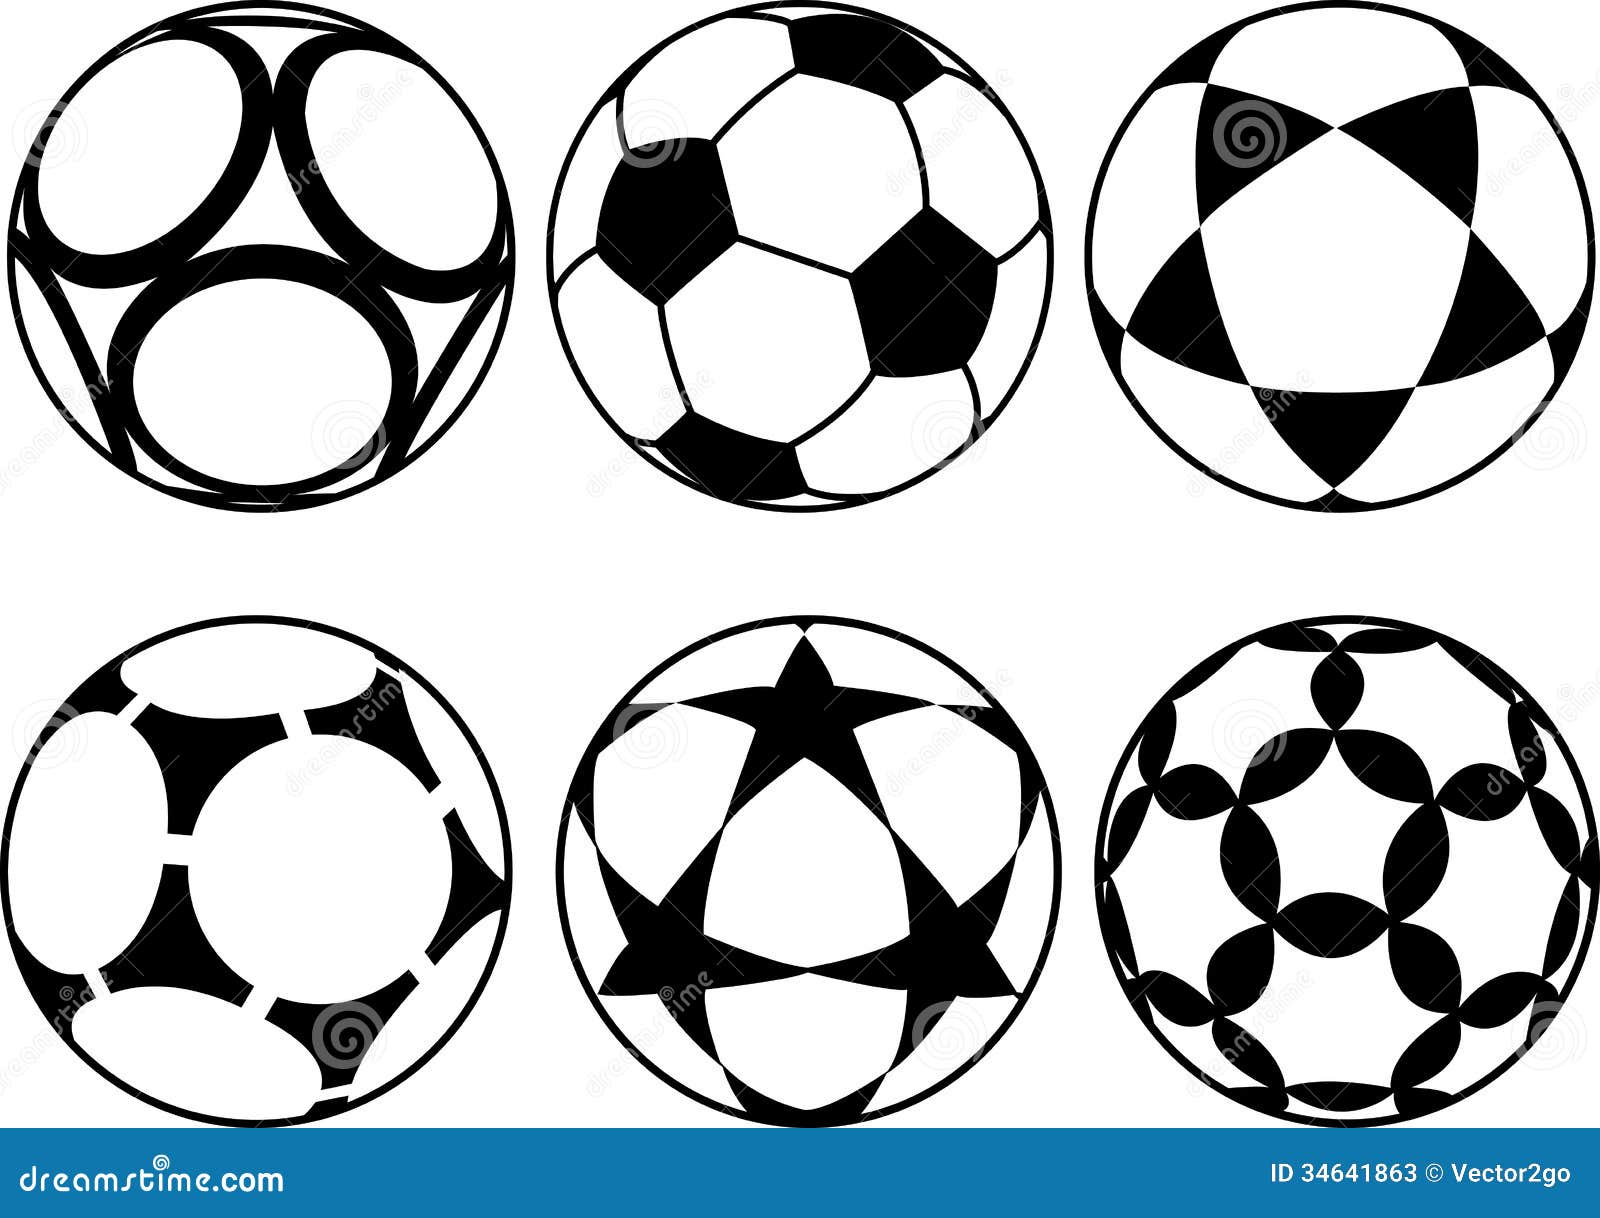 Девять мячей. Стилизованный футбольный мяч. Футбольный мяч черно белый. Футбольный мяч для распечатки. Футбольный мяч эскиз.